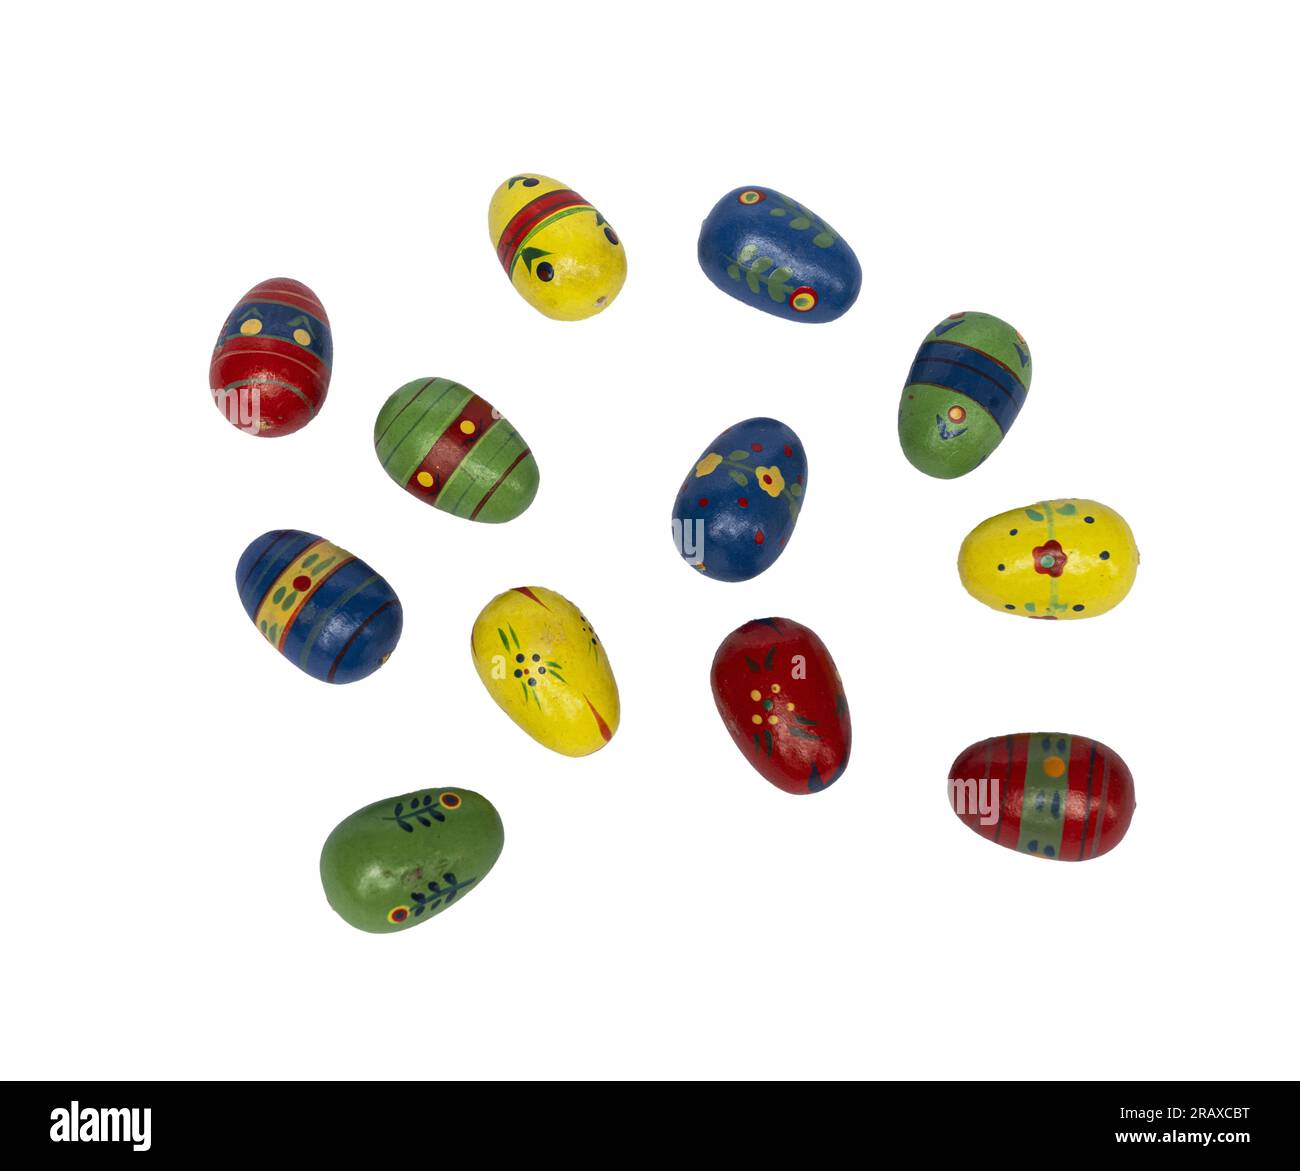 petits œufs colorés et décorés sur une surface transparente Banque D'Images